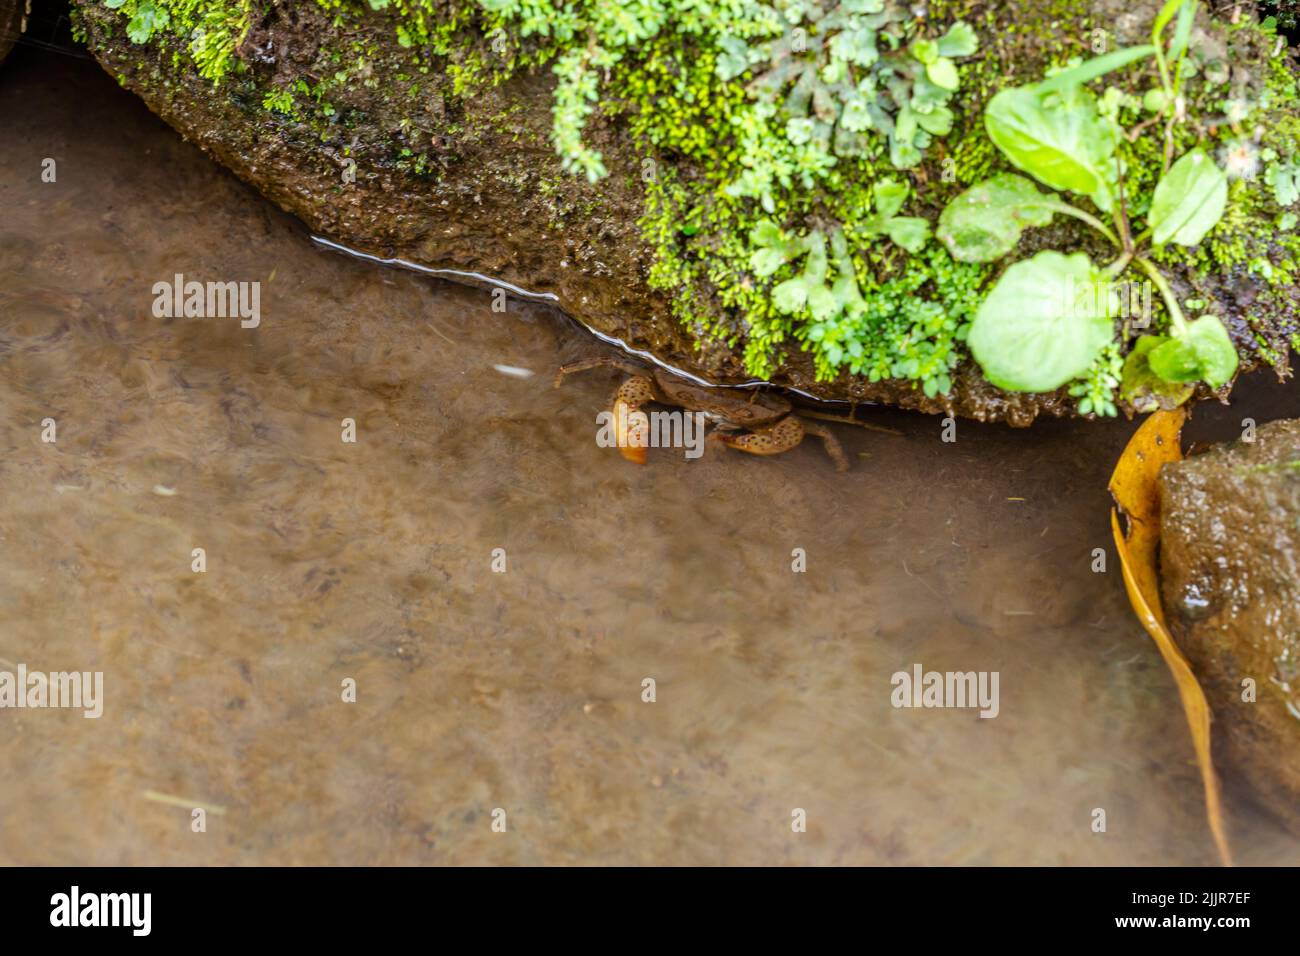 Eine kleine Krabbe, die in einem kleinen Fluss mit klarem Wasser lebt und sich unter einem schmutzigen und moosigen Felsen versteckt Stockfoto